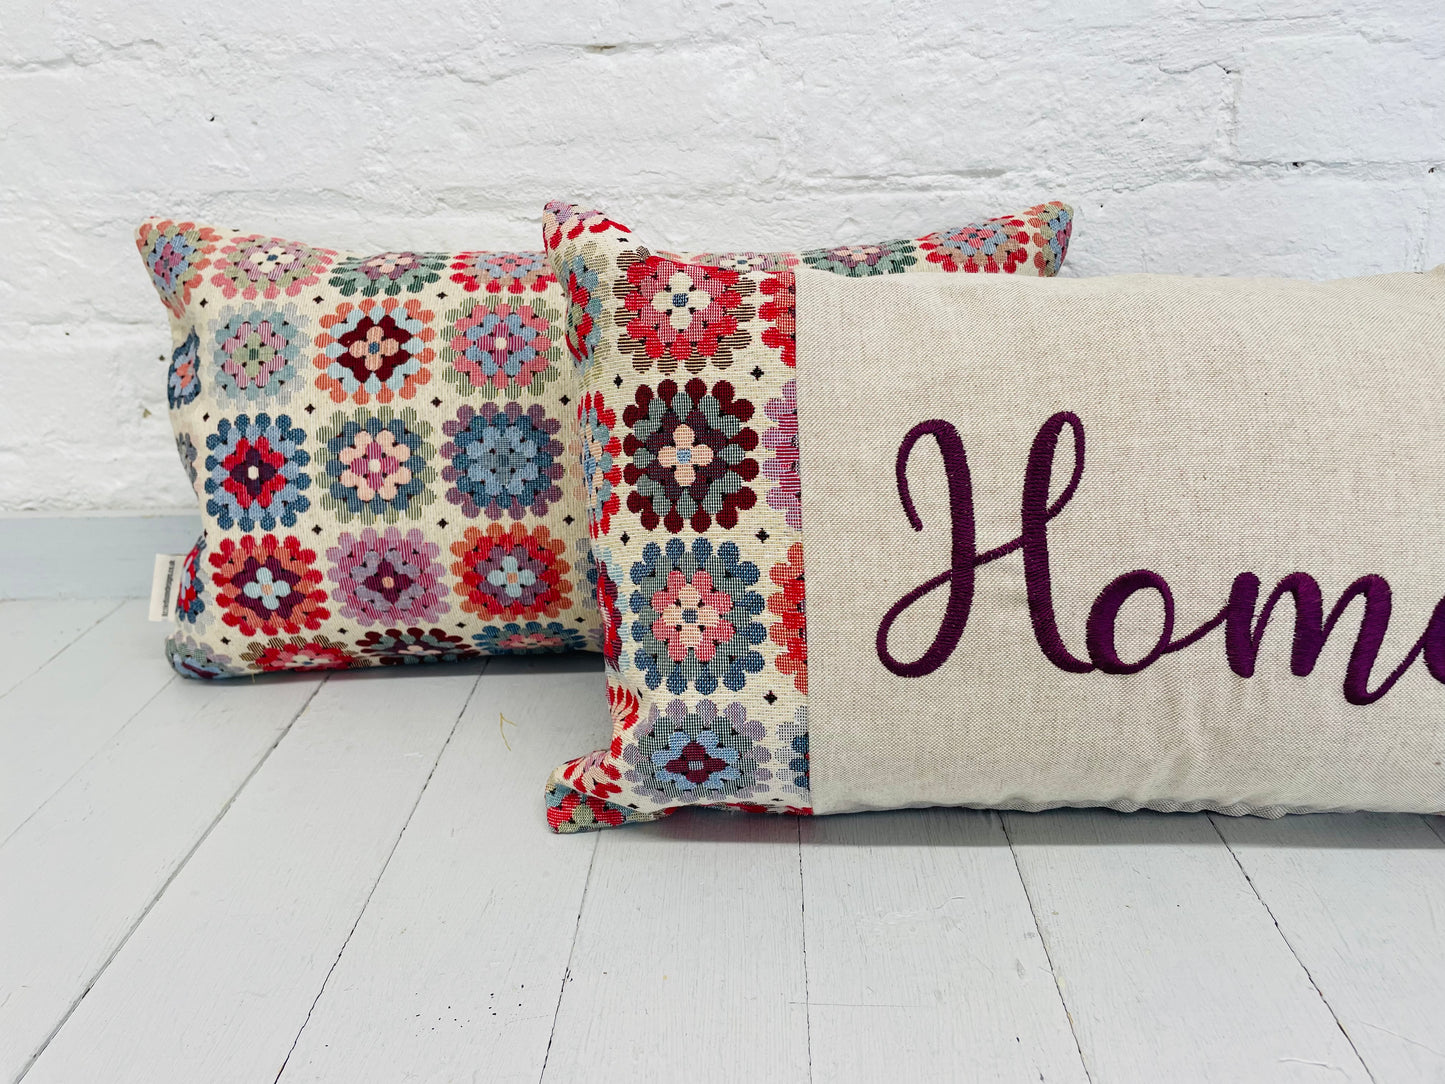 Home Crochet style  Cushion- Home  Cushion